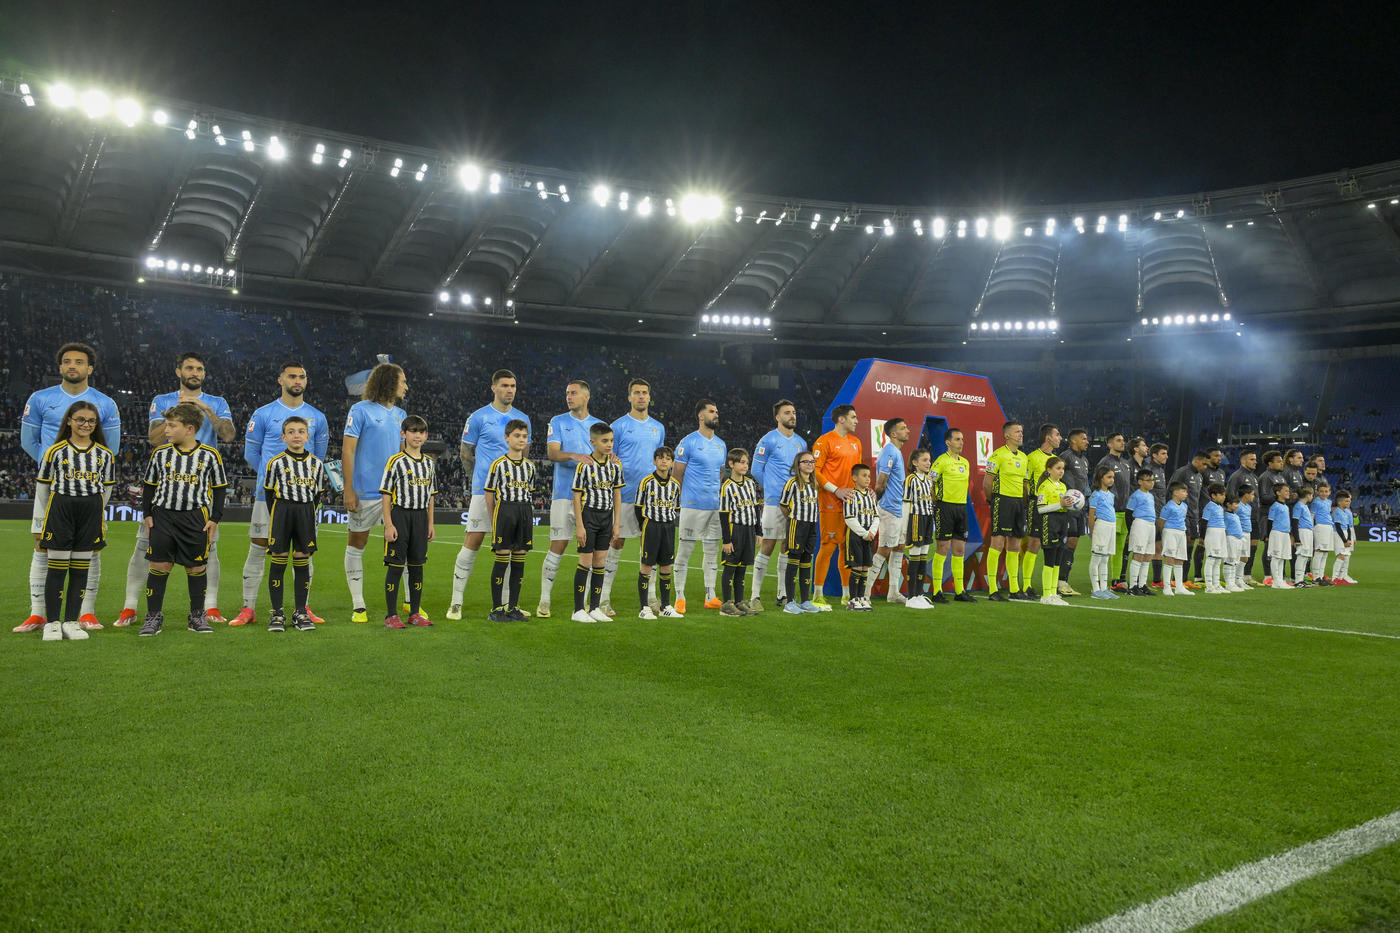 Lazio schierata al centro del campo contro la Juventus